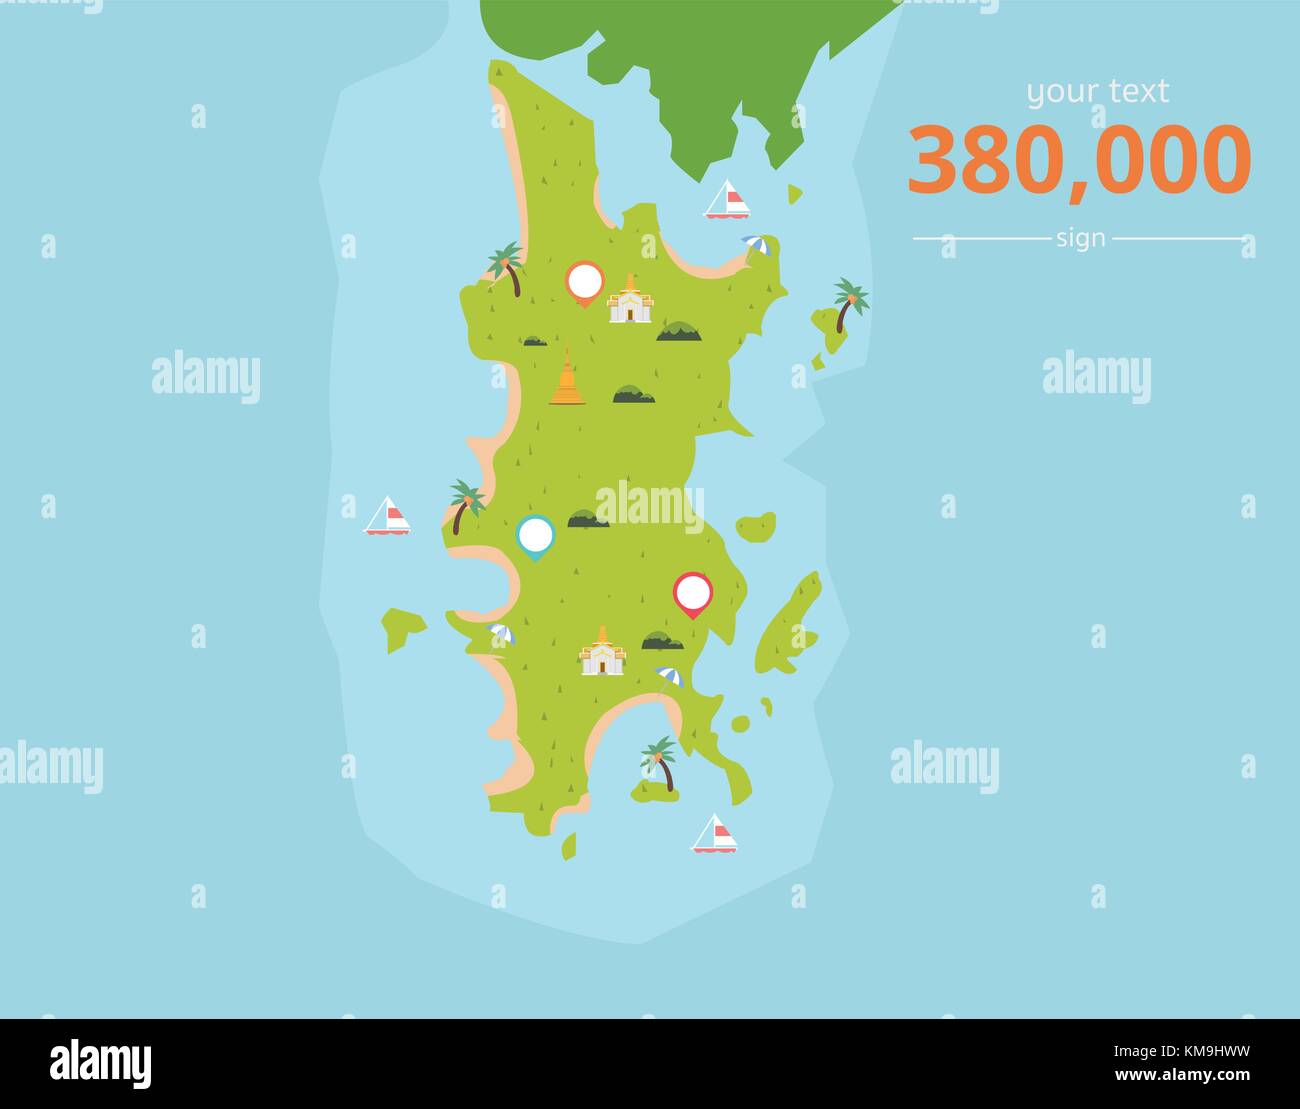 La Thaïlande des îles tropicales avec des icônes de la culture et le texte vector illustration.L'île de Phuket en Thaïlande.carte de l'ile en Asie. Illustration de Vecteur